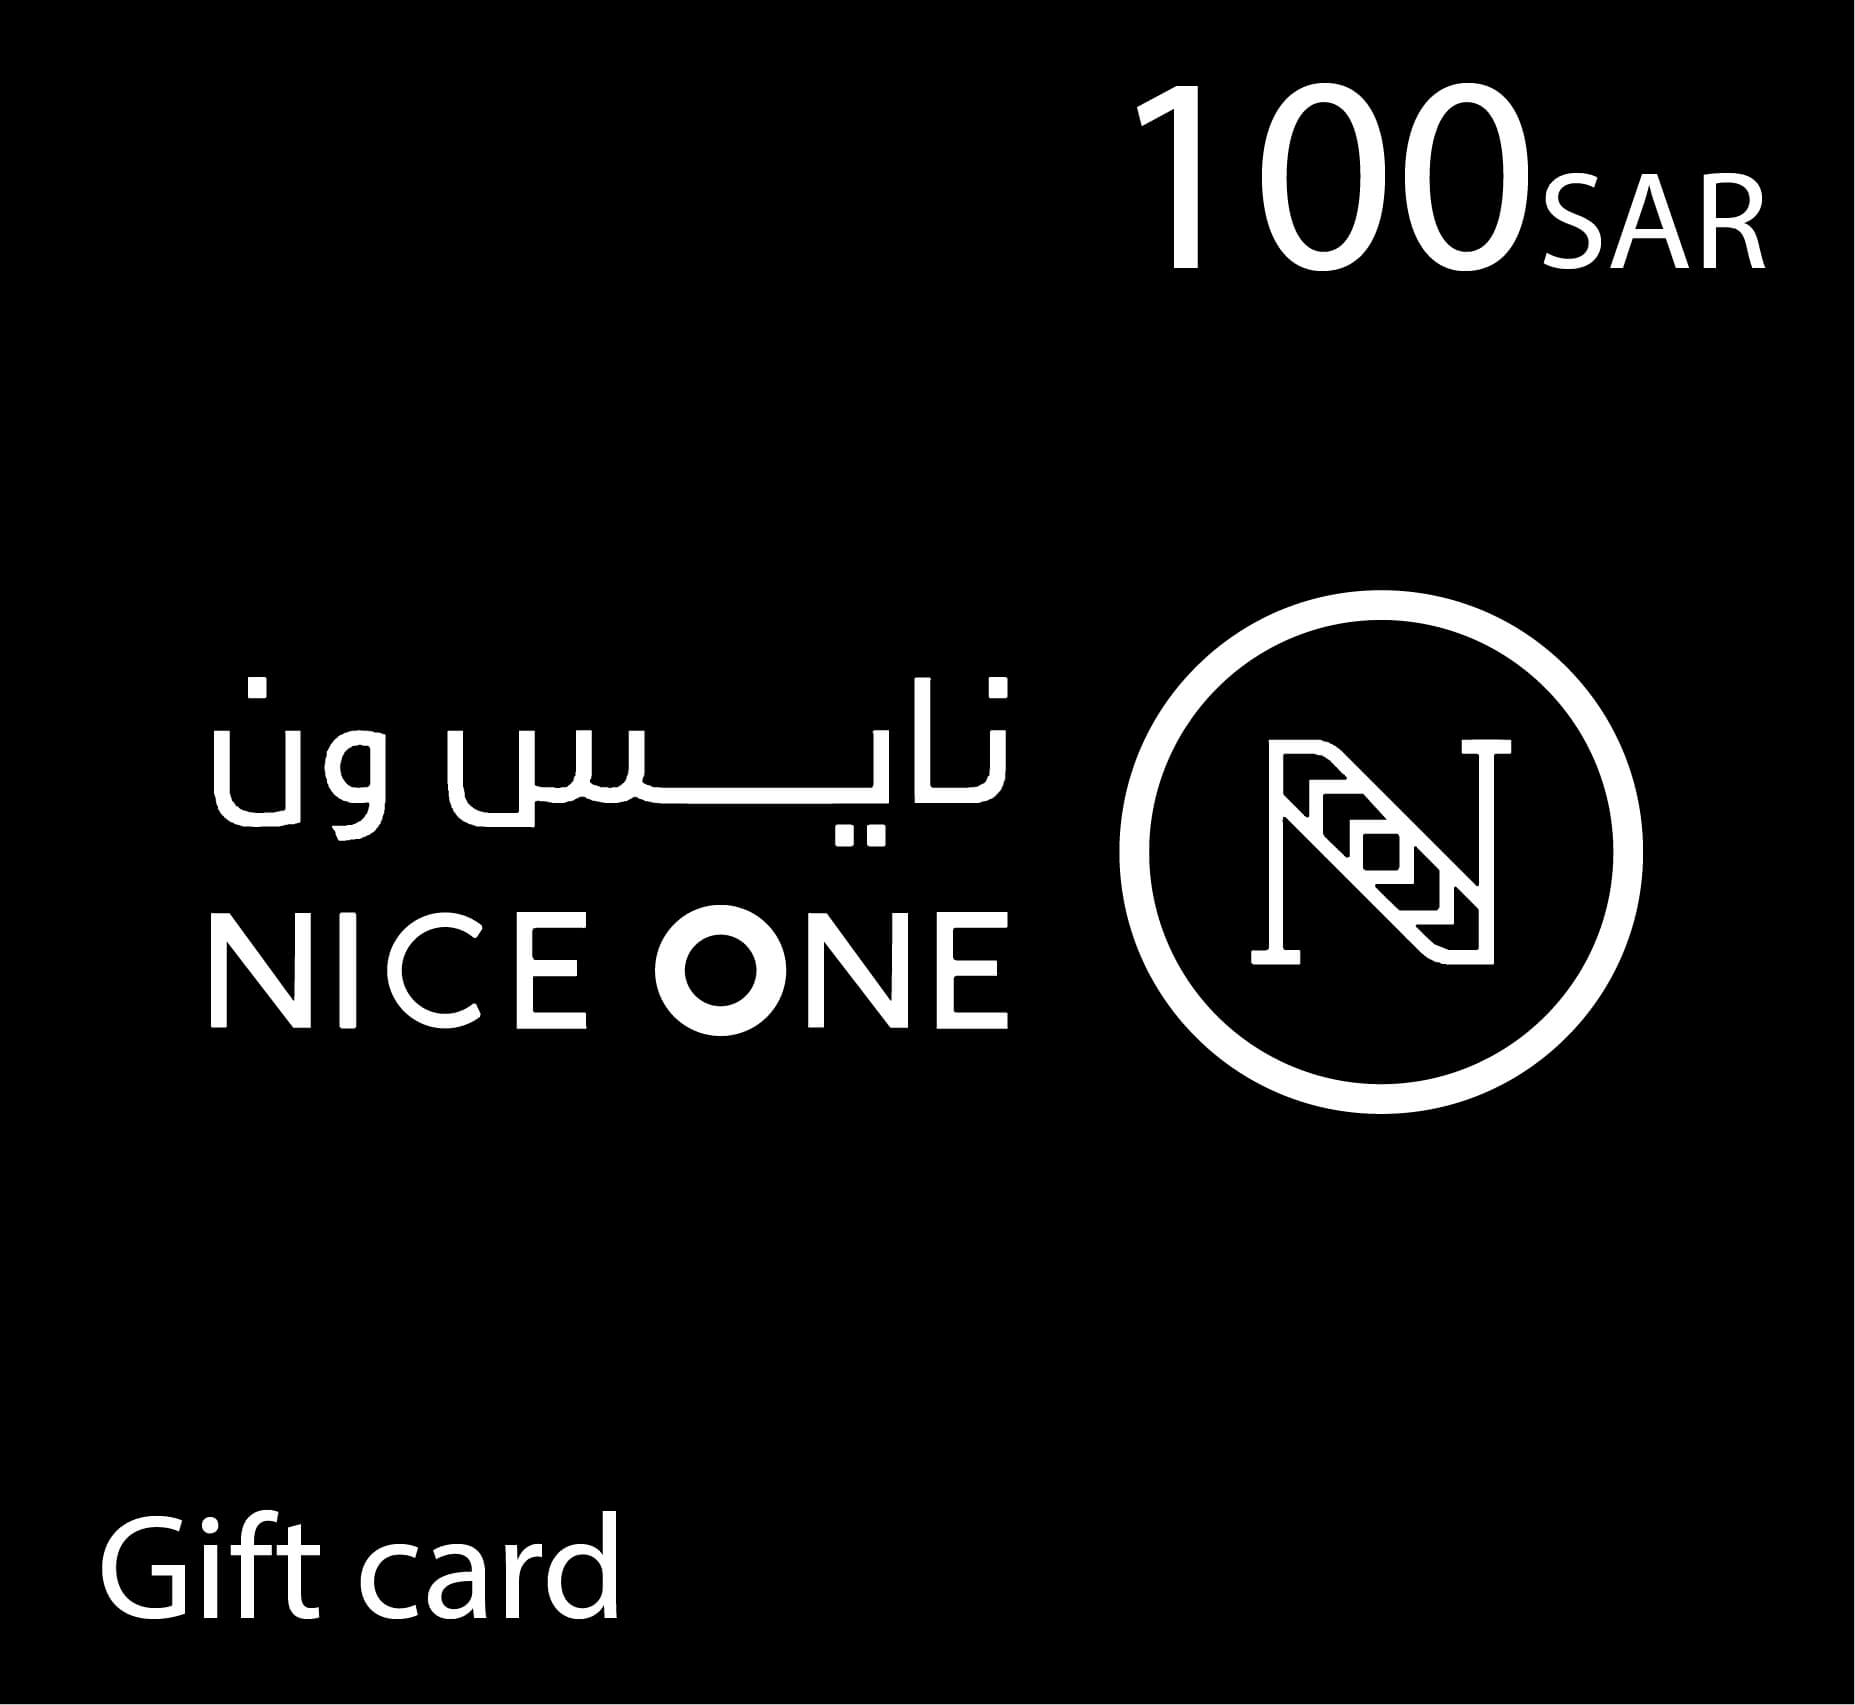 NiceOne Gift Card - 100 SAR